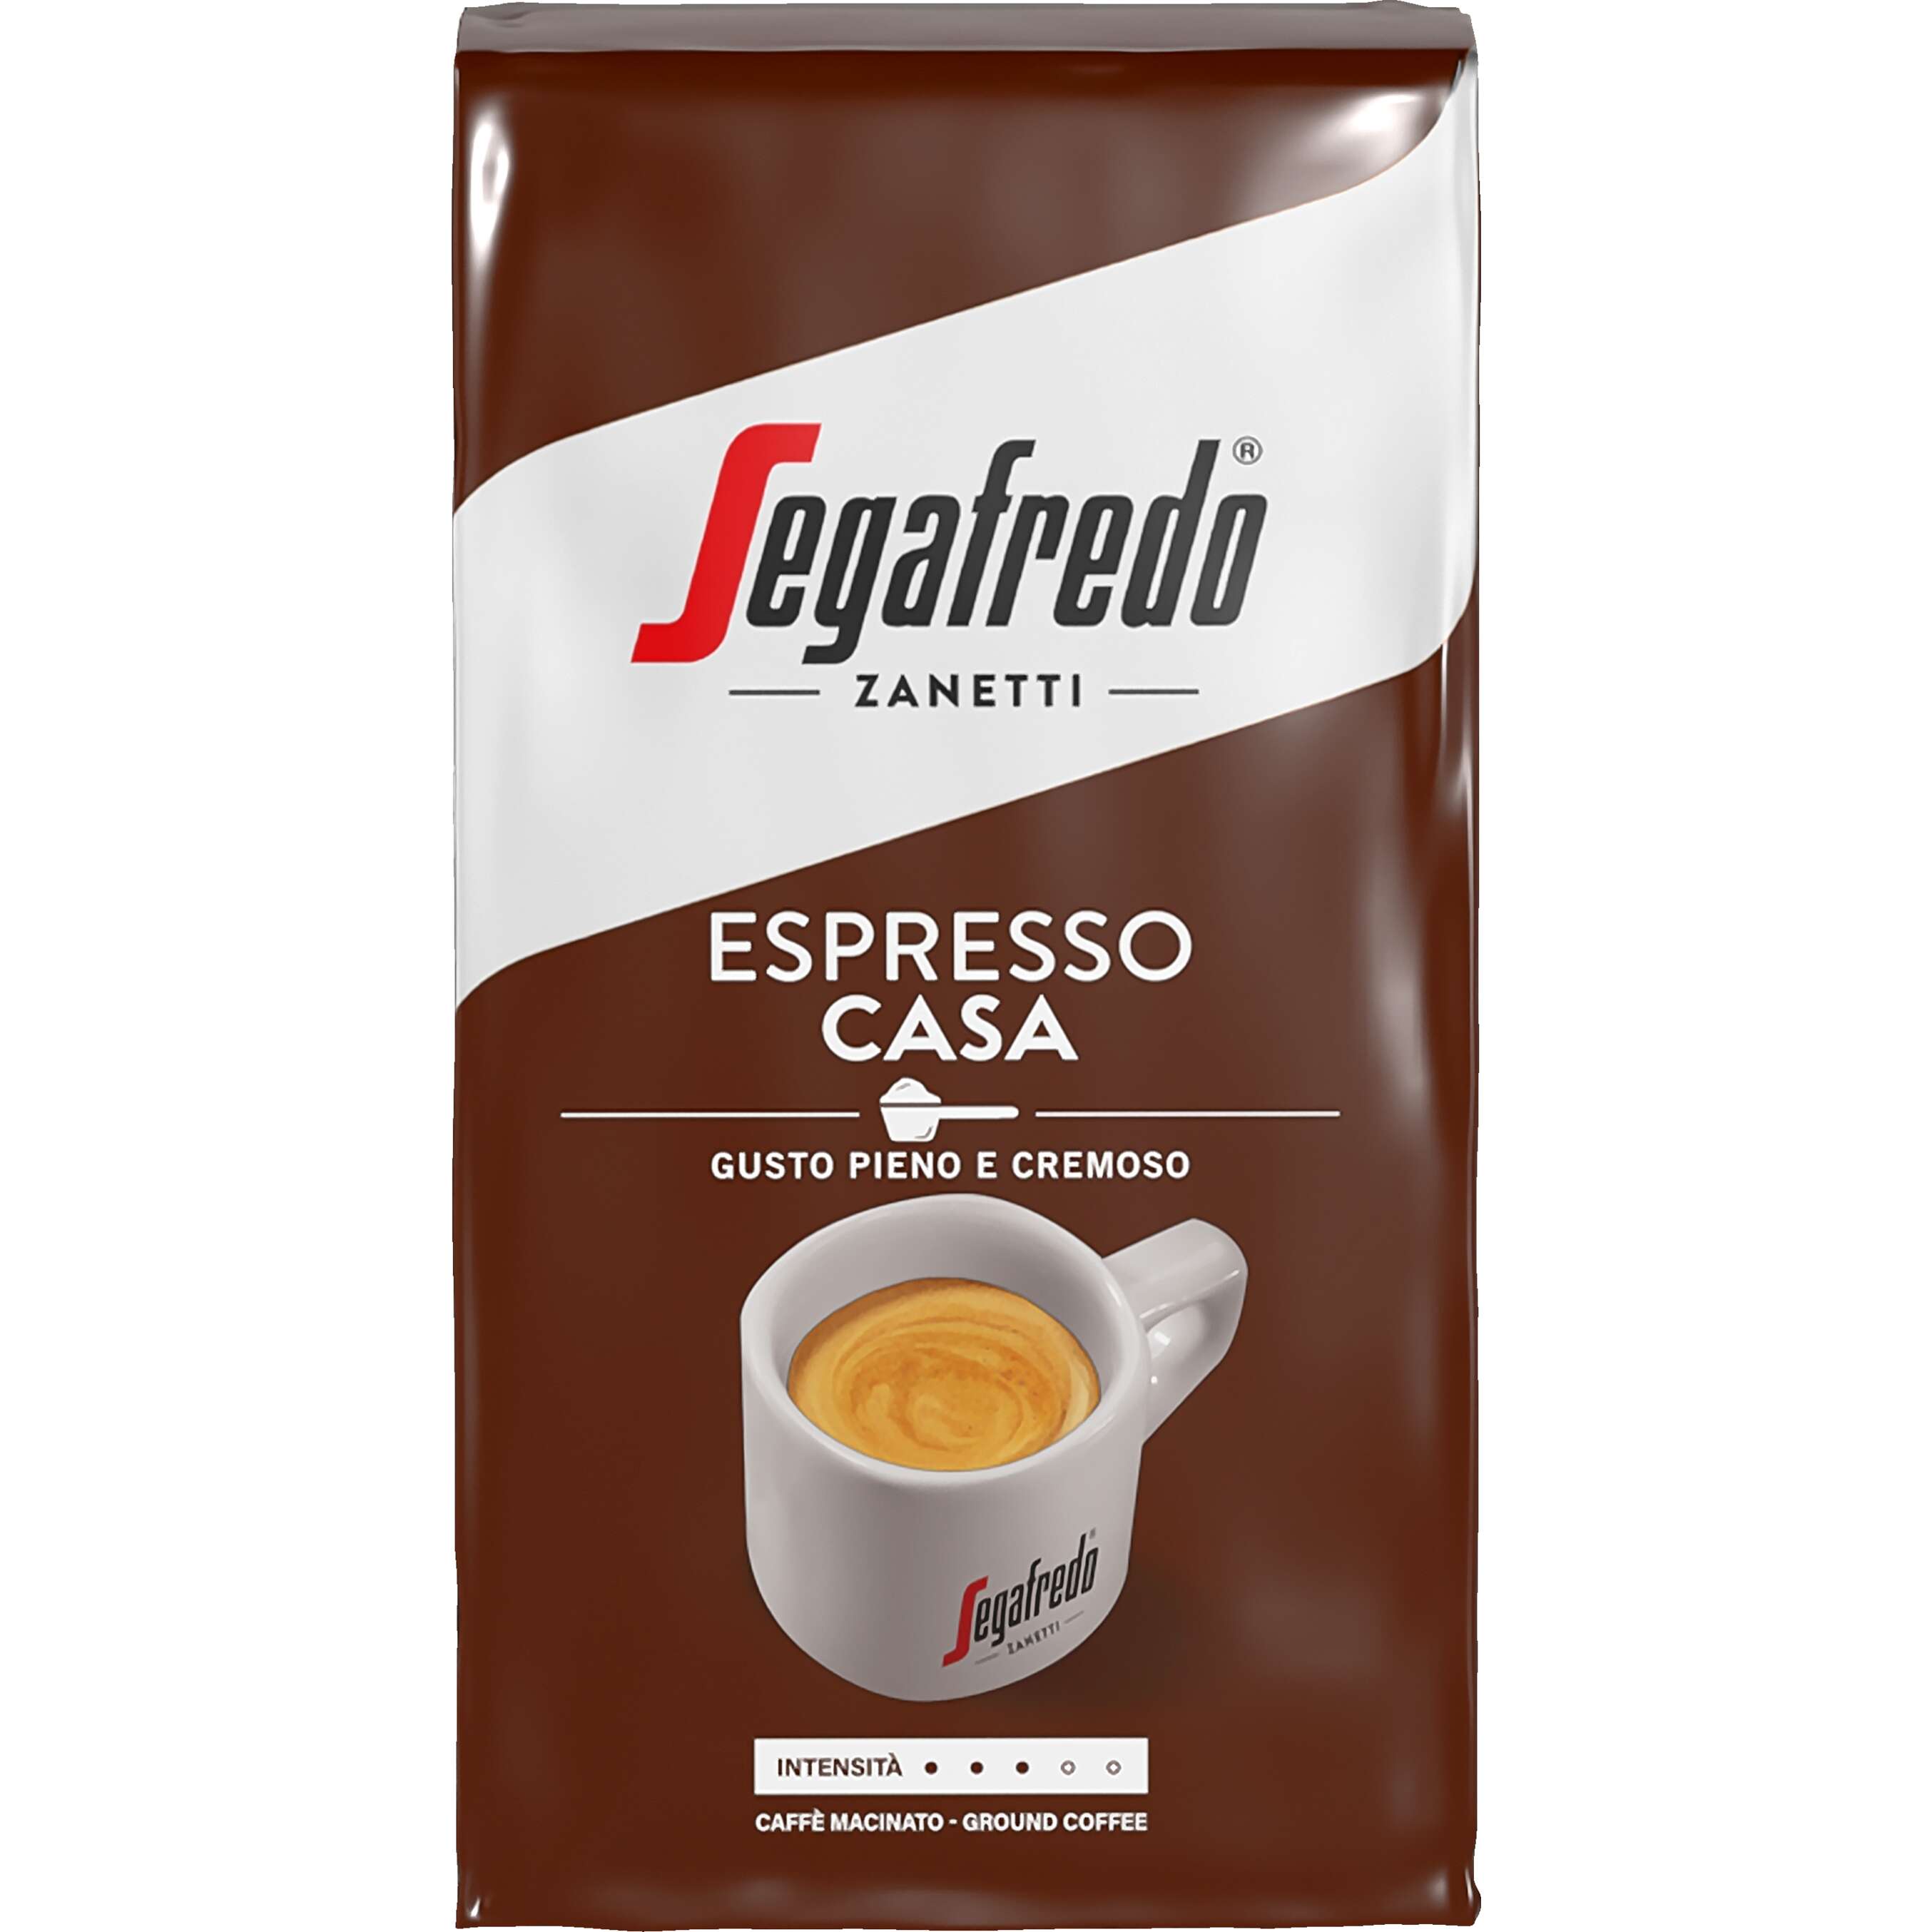 Zobrazit nabídku Segafredo Mletá káva